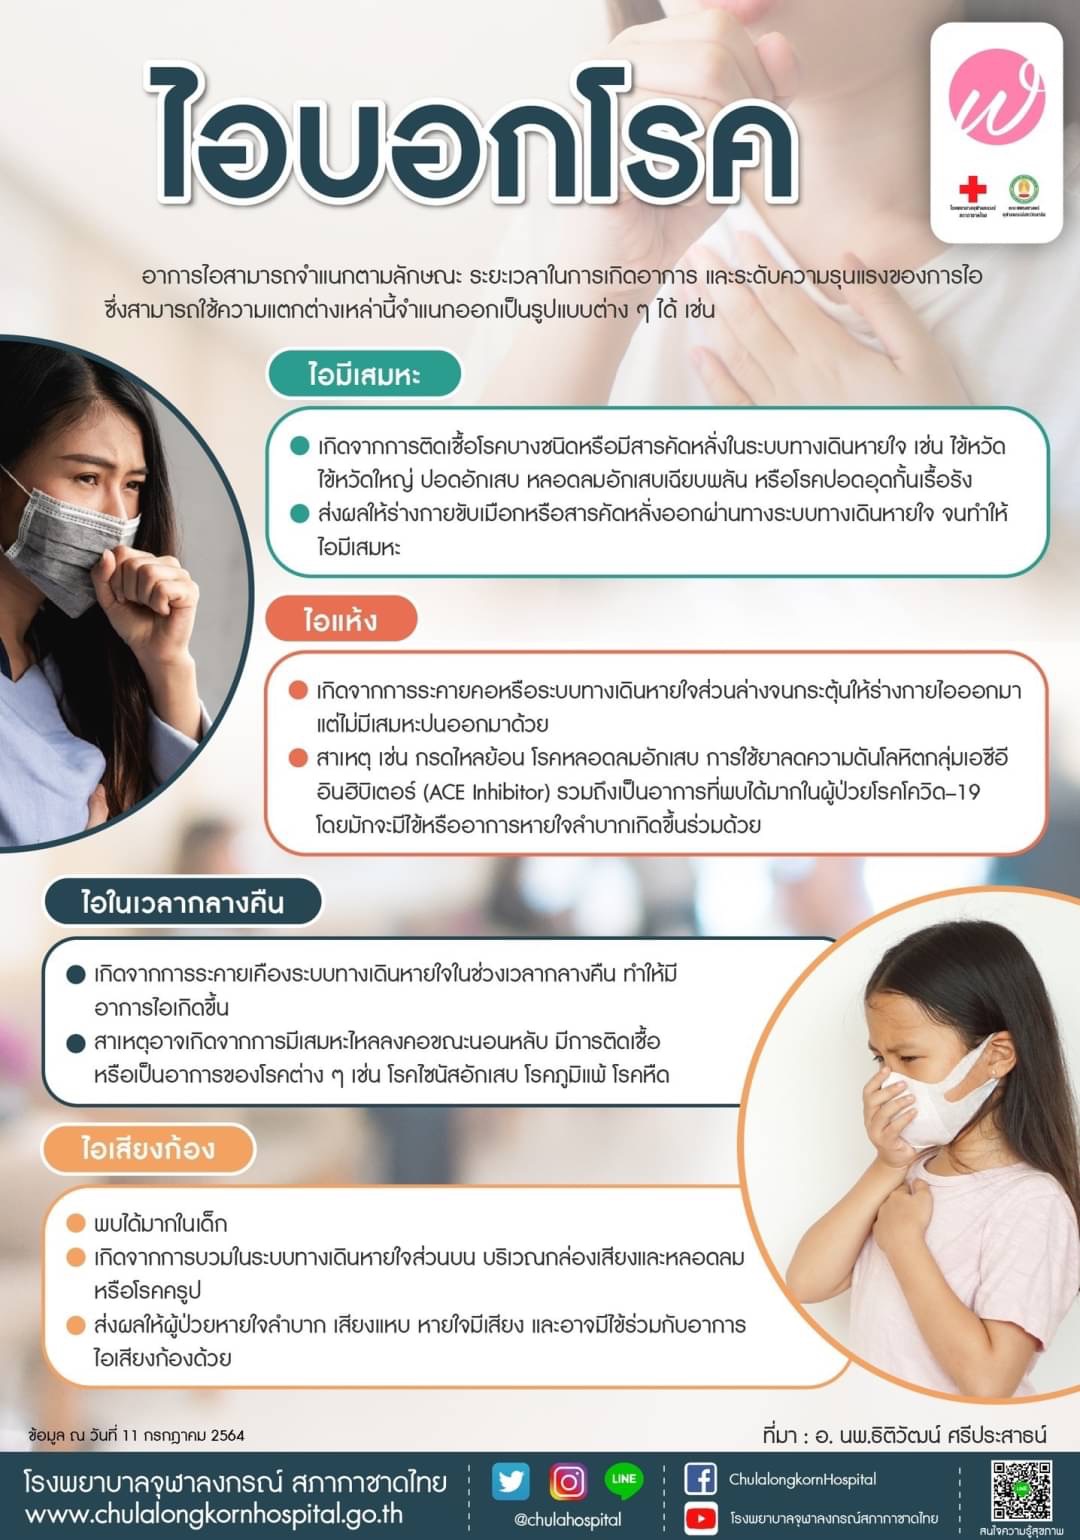 ไอบอกโรค - โรงพยาบาลจุฬาลงกรณ์ สภากาชาดไทย